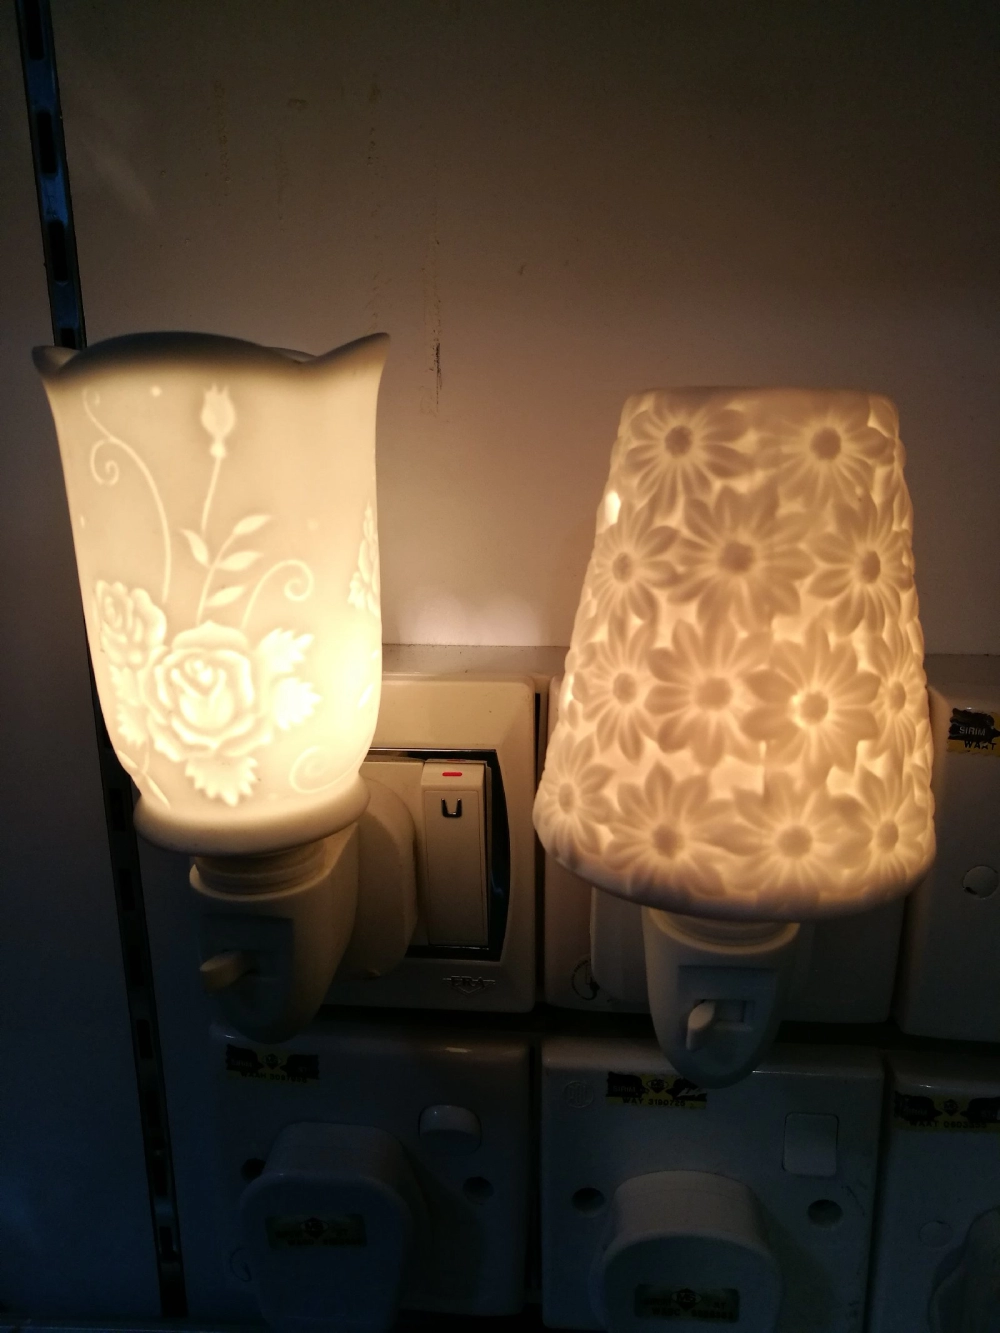 Ceramic plug-in night light aroma